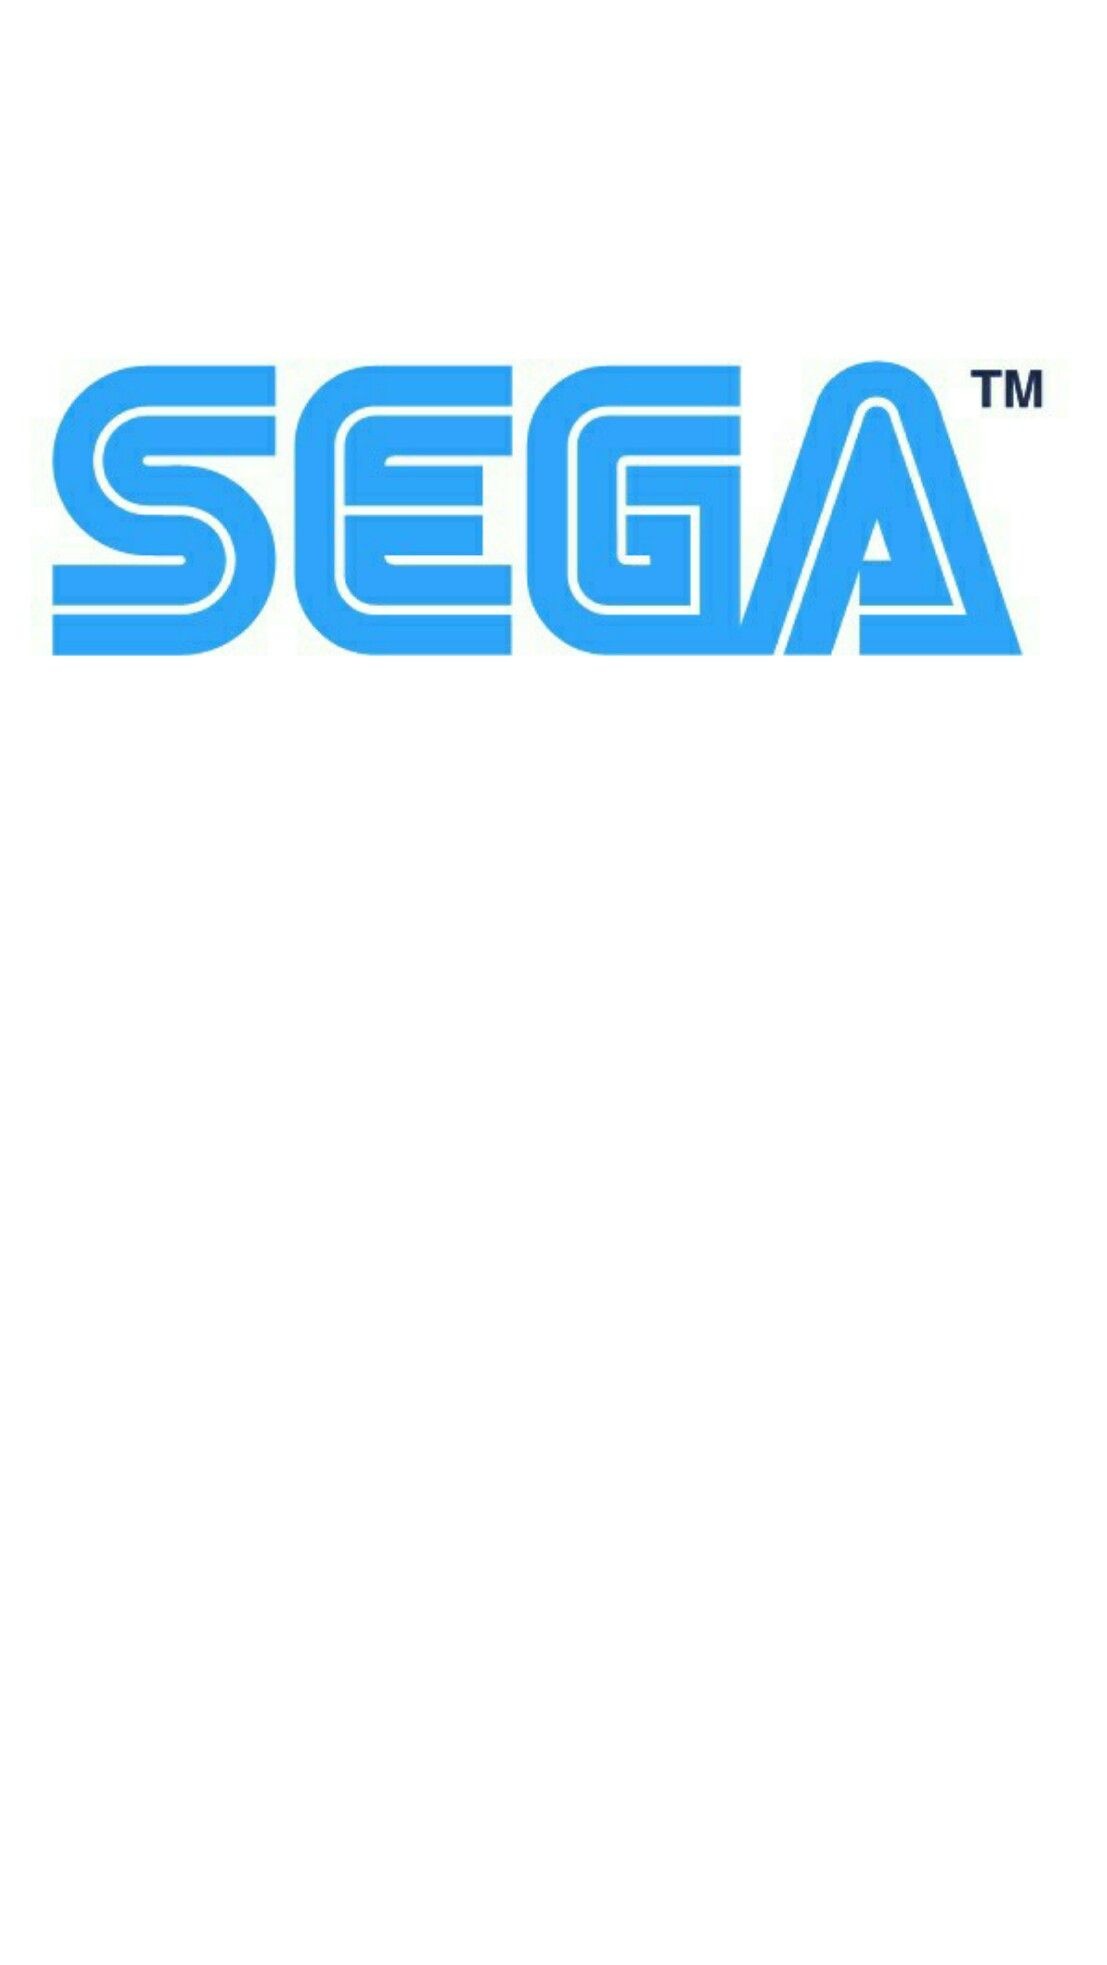 Sega phone wallpapers, Retro gaming nostalgia, Classic Sega games, Gaming backgrounds, 1110x1970 HD Phone